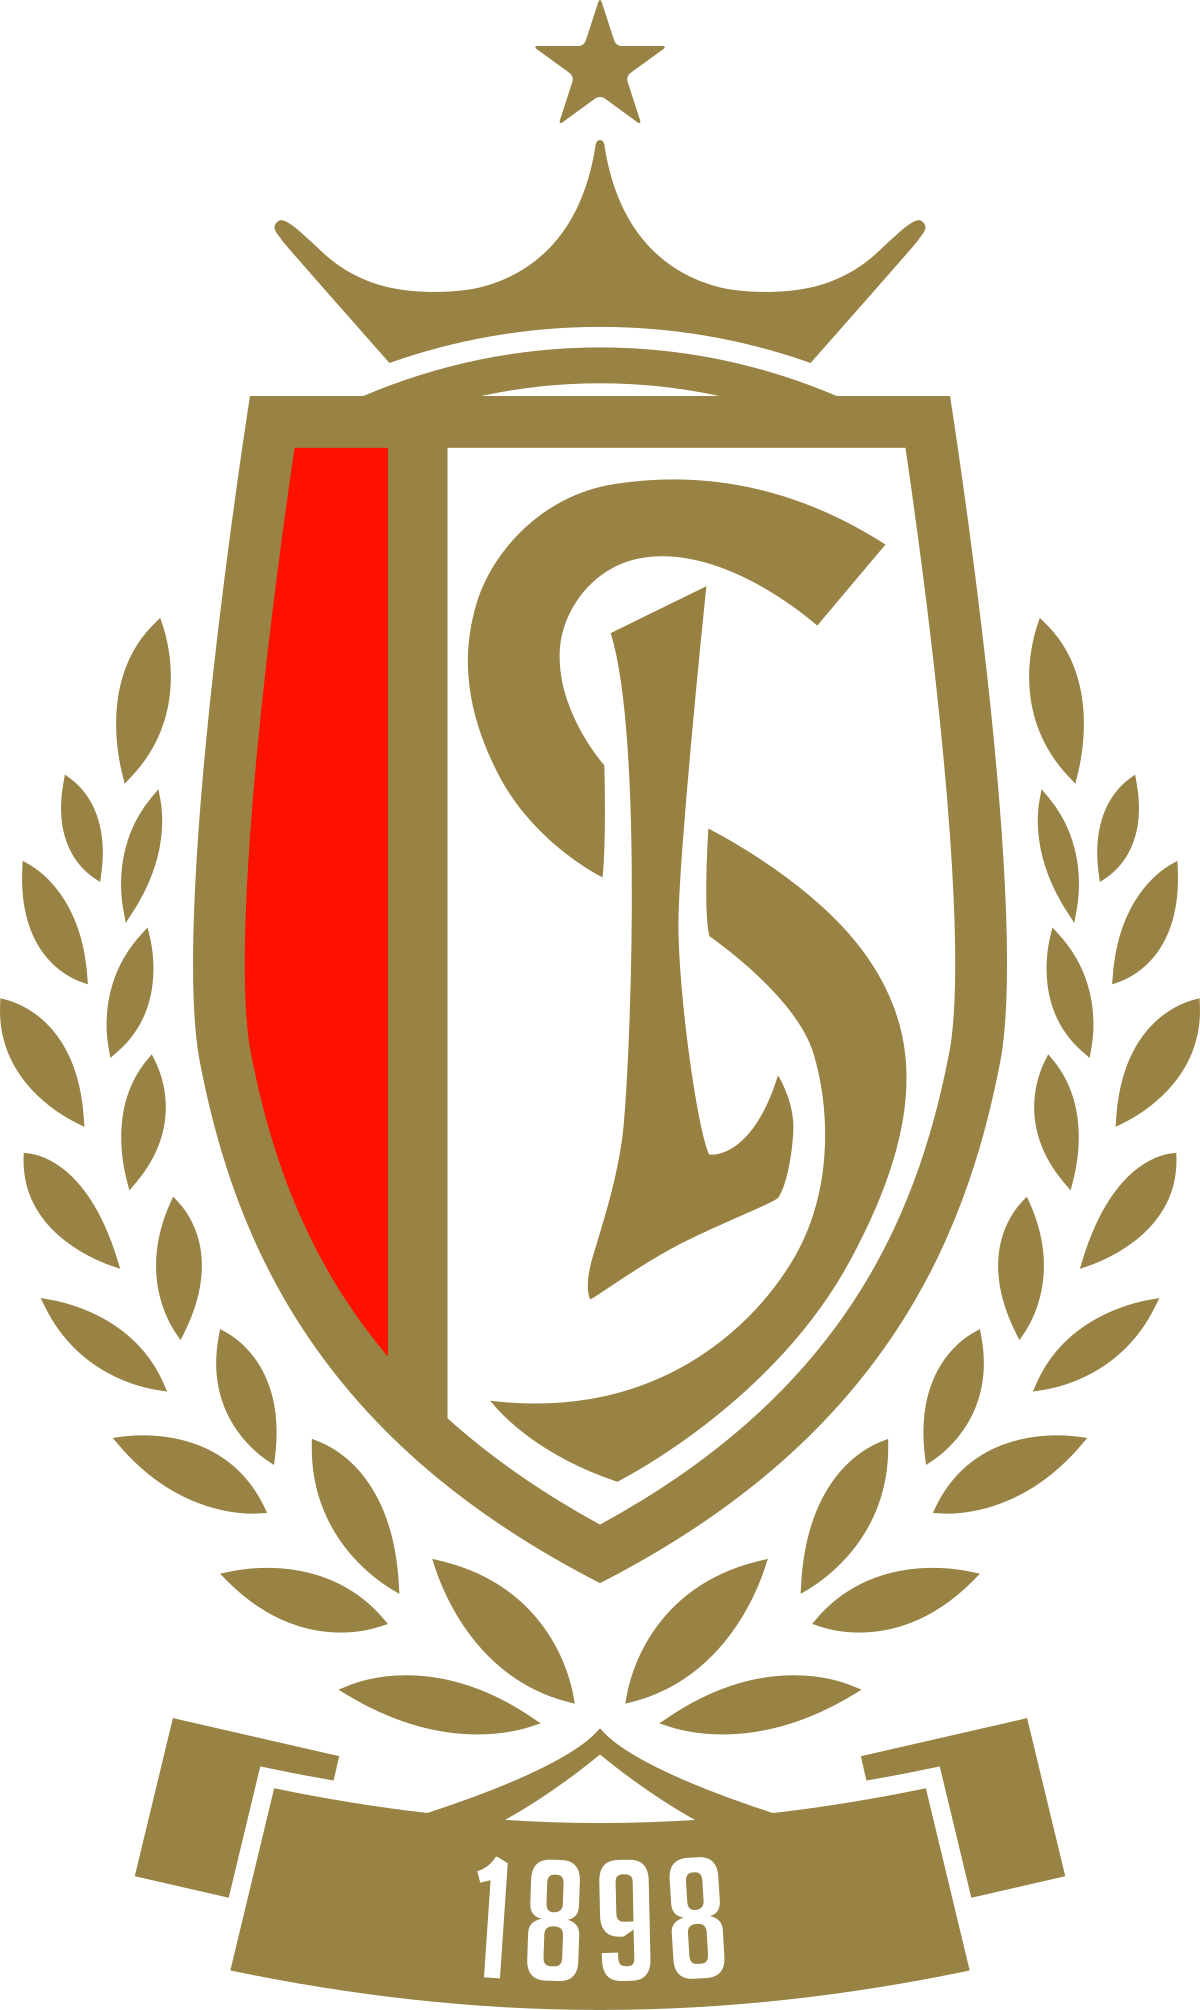 Logo SL 16 FC